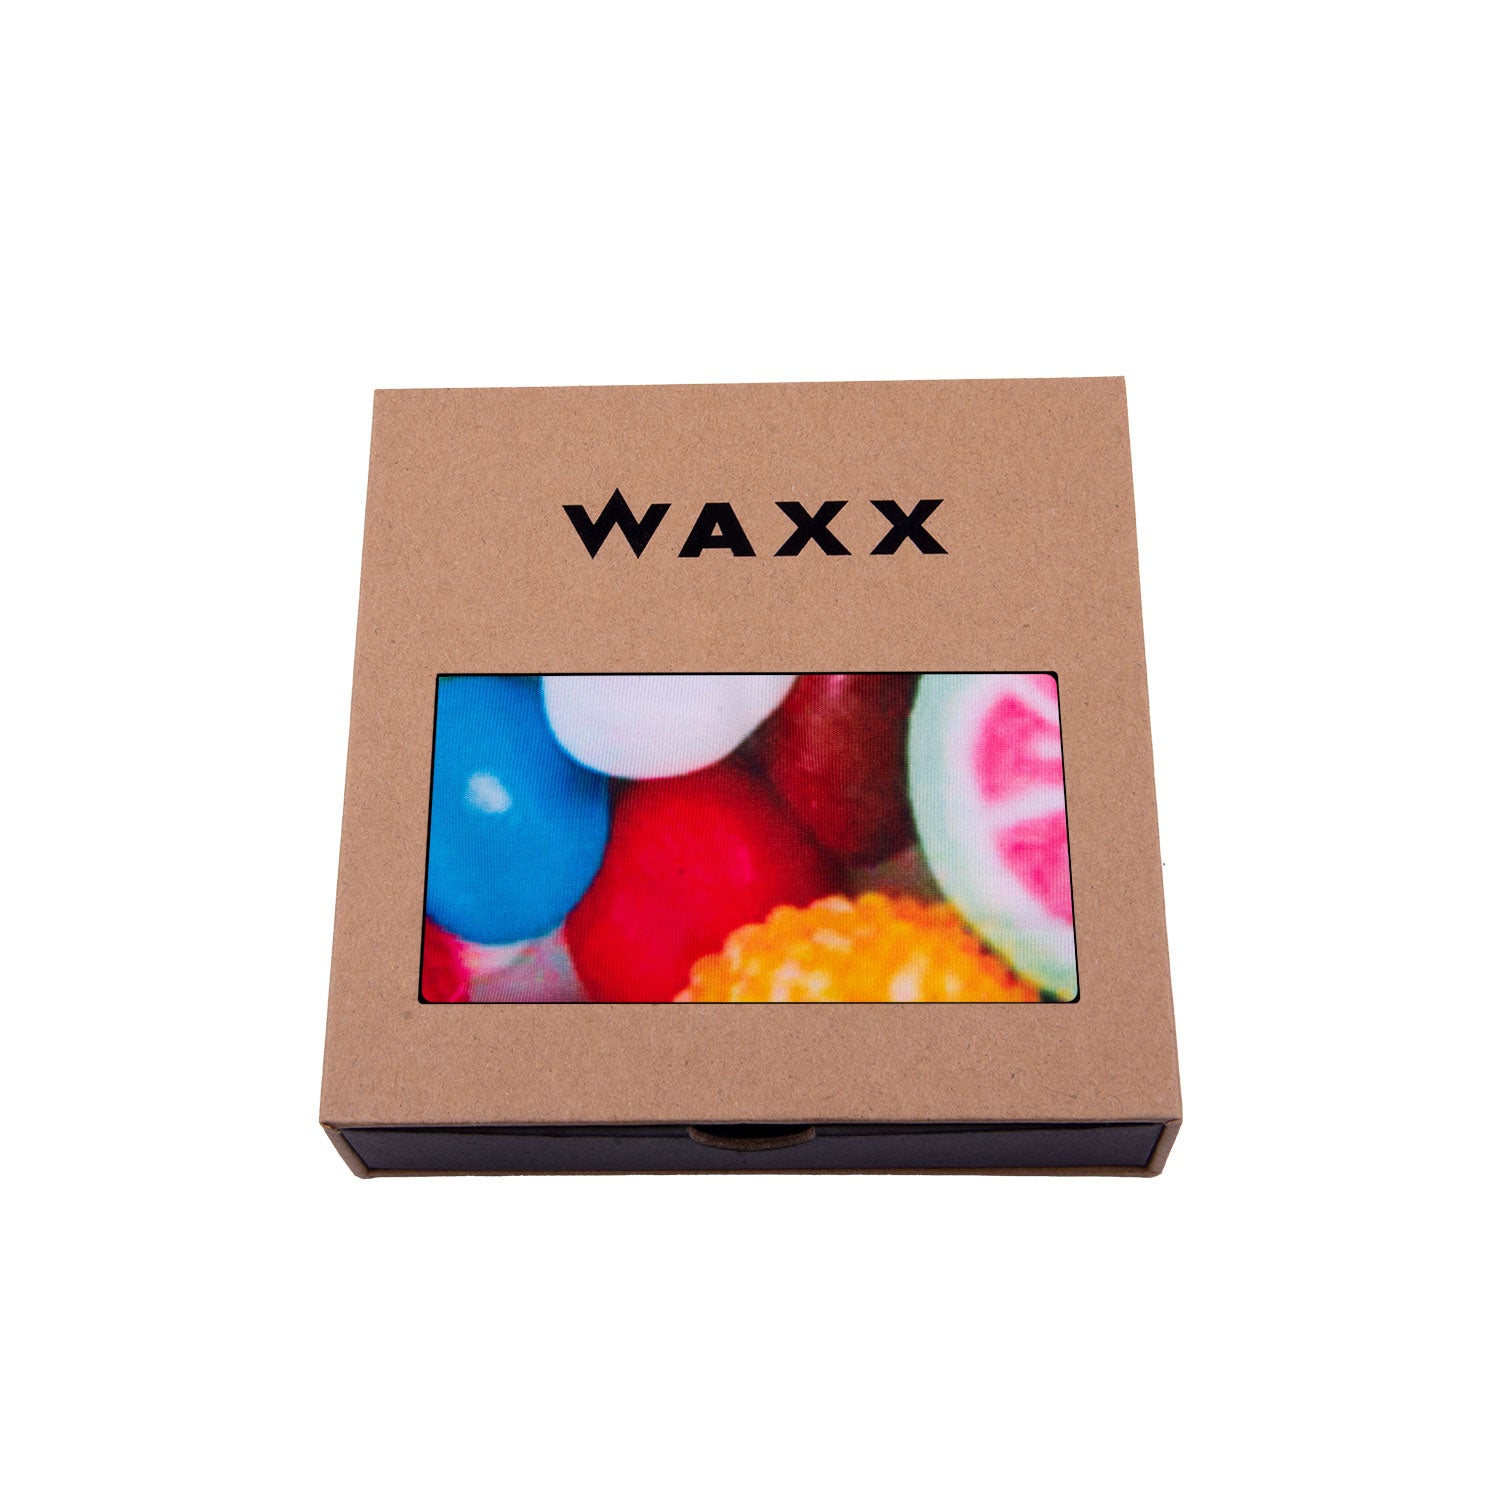 Waxx Women's Boy Short Candy